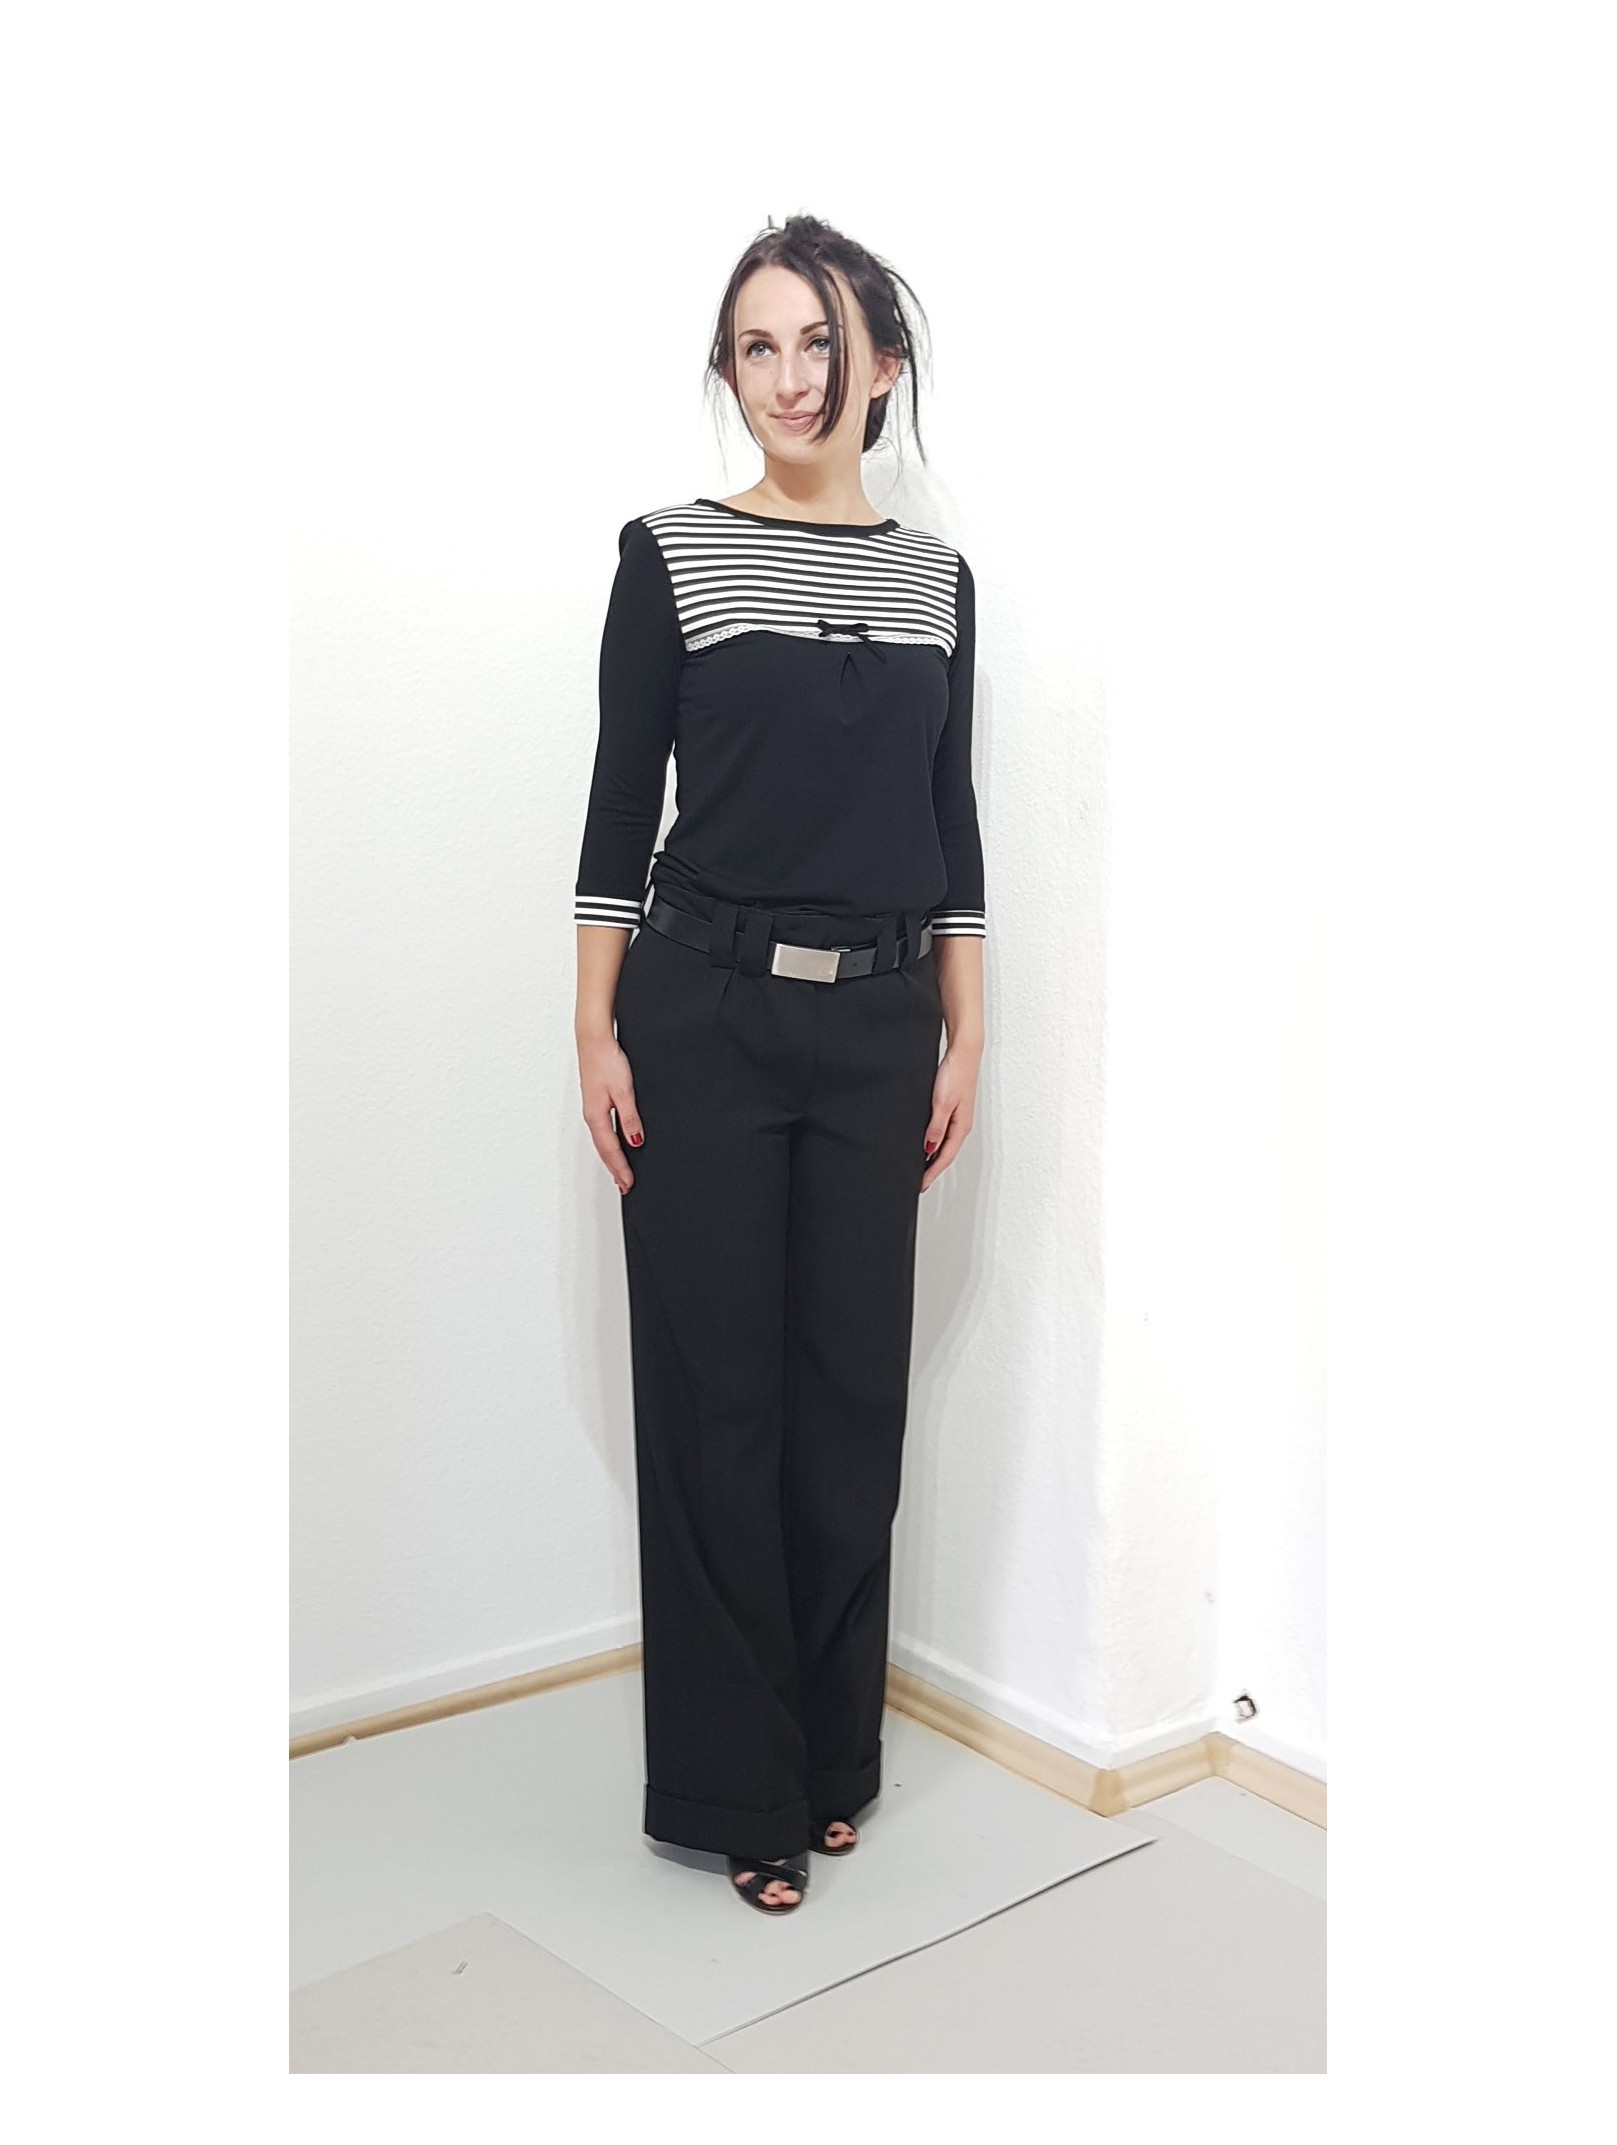 Elegante Damen Bluse in Schwarz, Streifen, Schleife, Designer Mode.